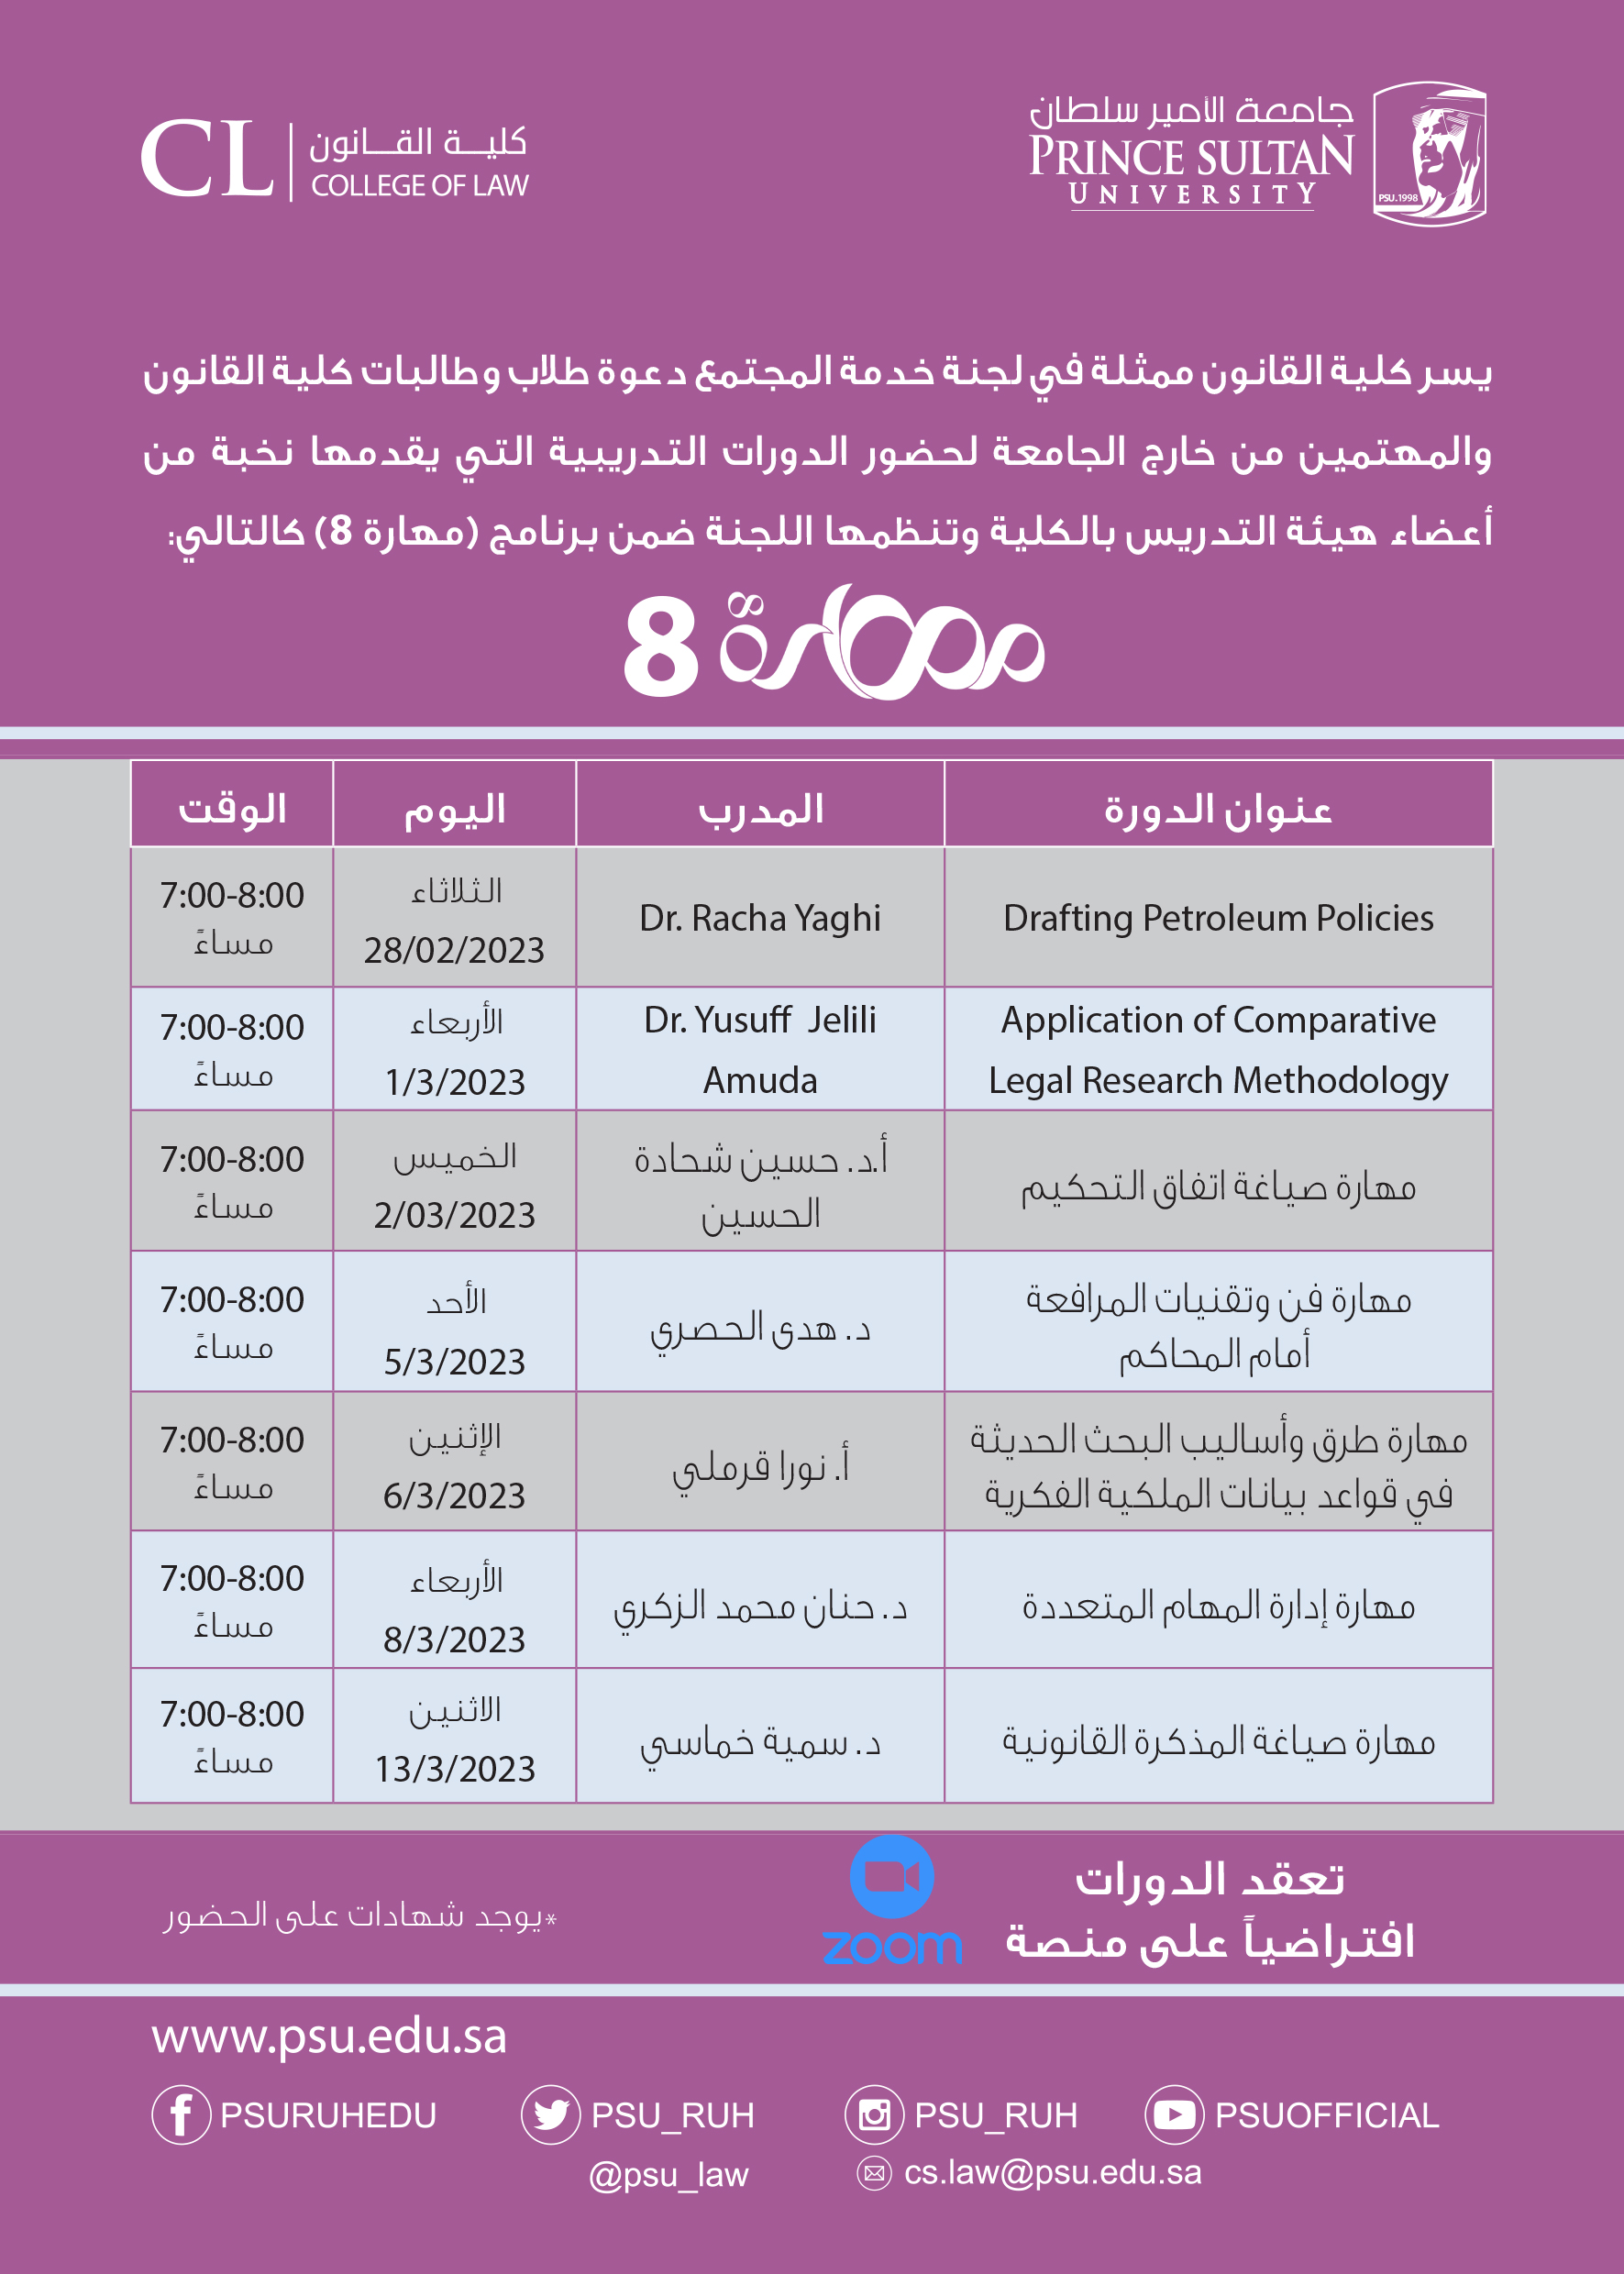 يسر كلية القانون بـ جامعة الأمير سلطان ان تعلن عن برنامج مهارة8  بحلته الجديدة لهذا الفصل، يتضمن البرنامج عدد 7 ورش عمل عن مواضيع متنوعة.